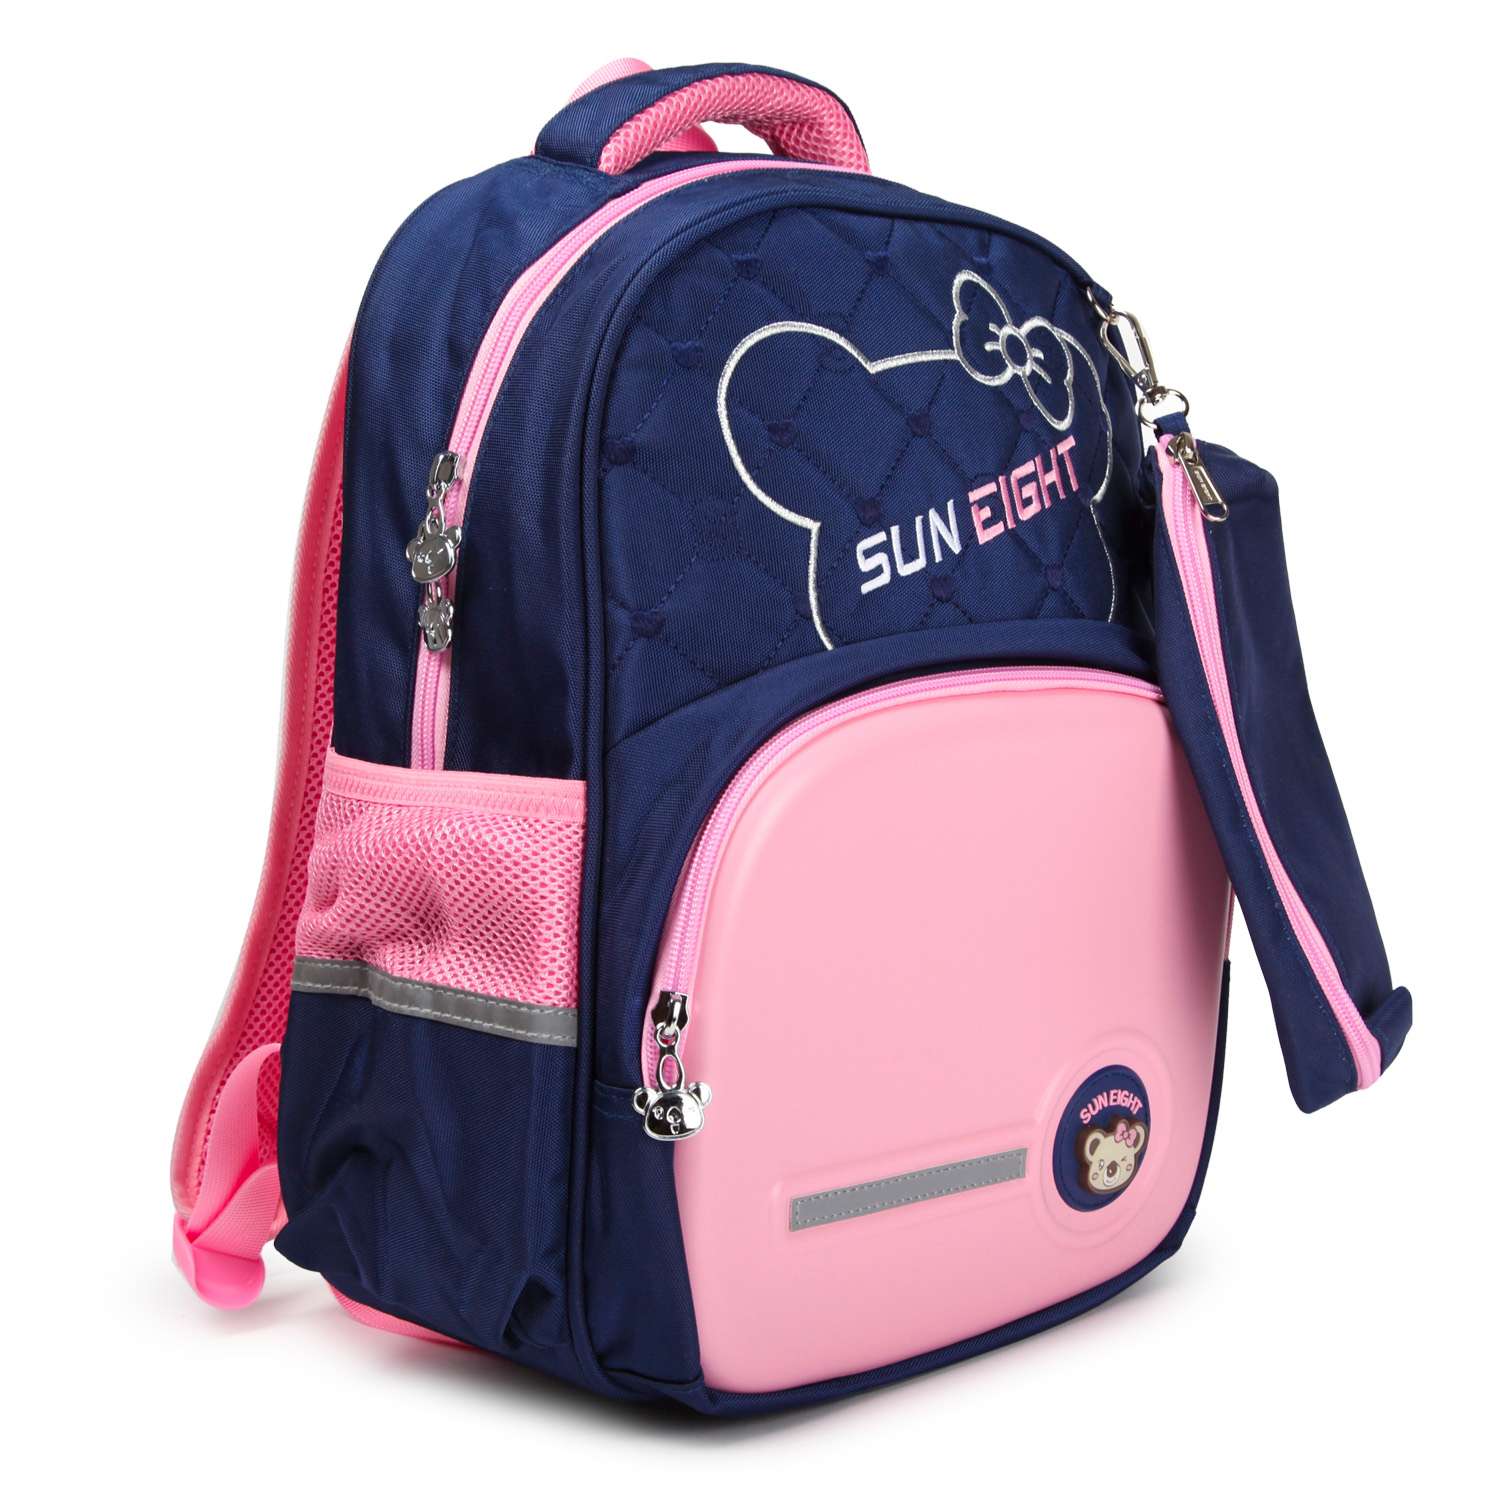 Рюкзак для девочки школьный Suneight SE2753 - фото 2